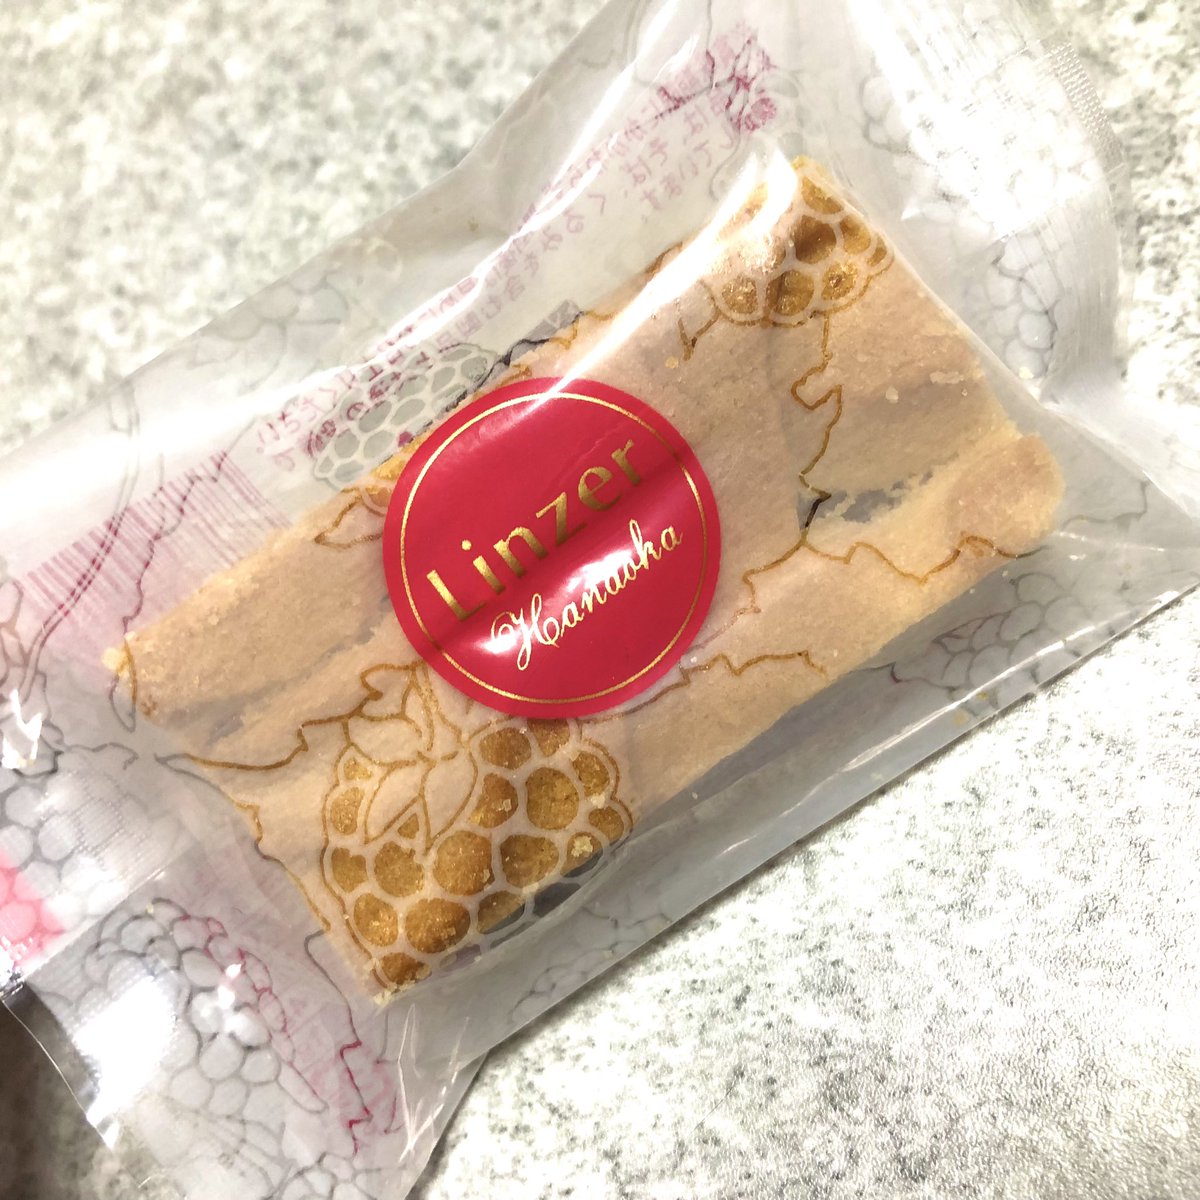 「この世で1番好きなクッキー!長野の花岡さんのリンツァー木苺ジャムが挟まっててサク」|しゃなりかのイラスト